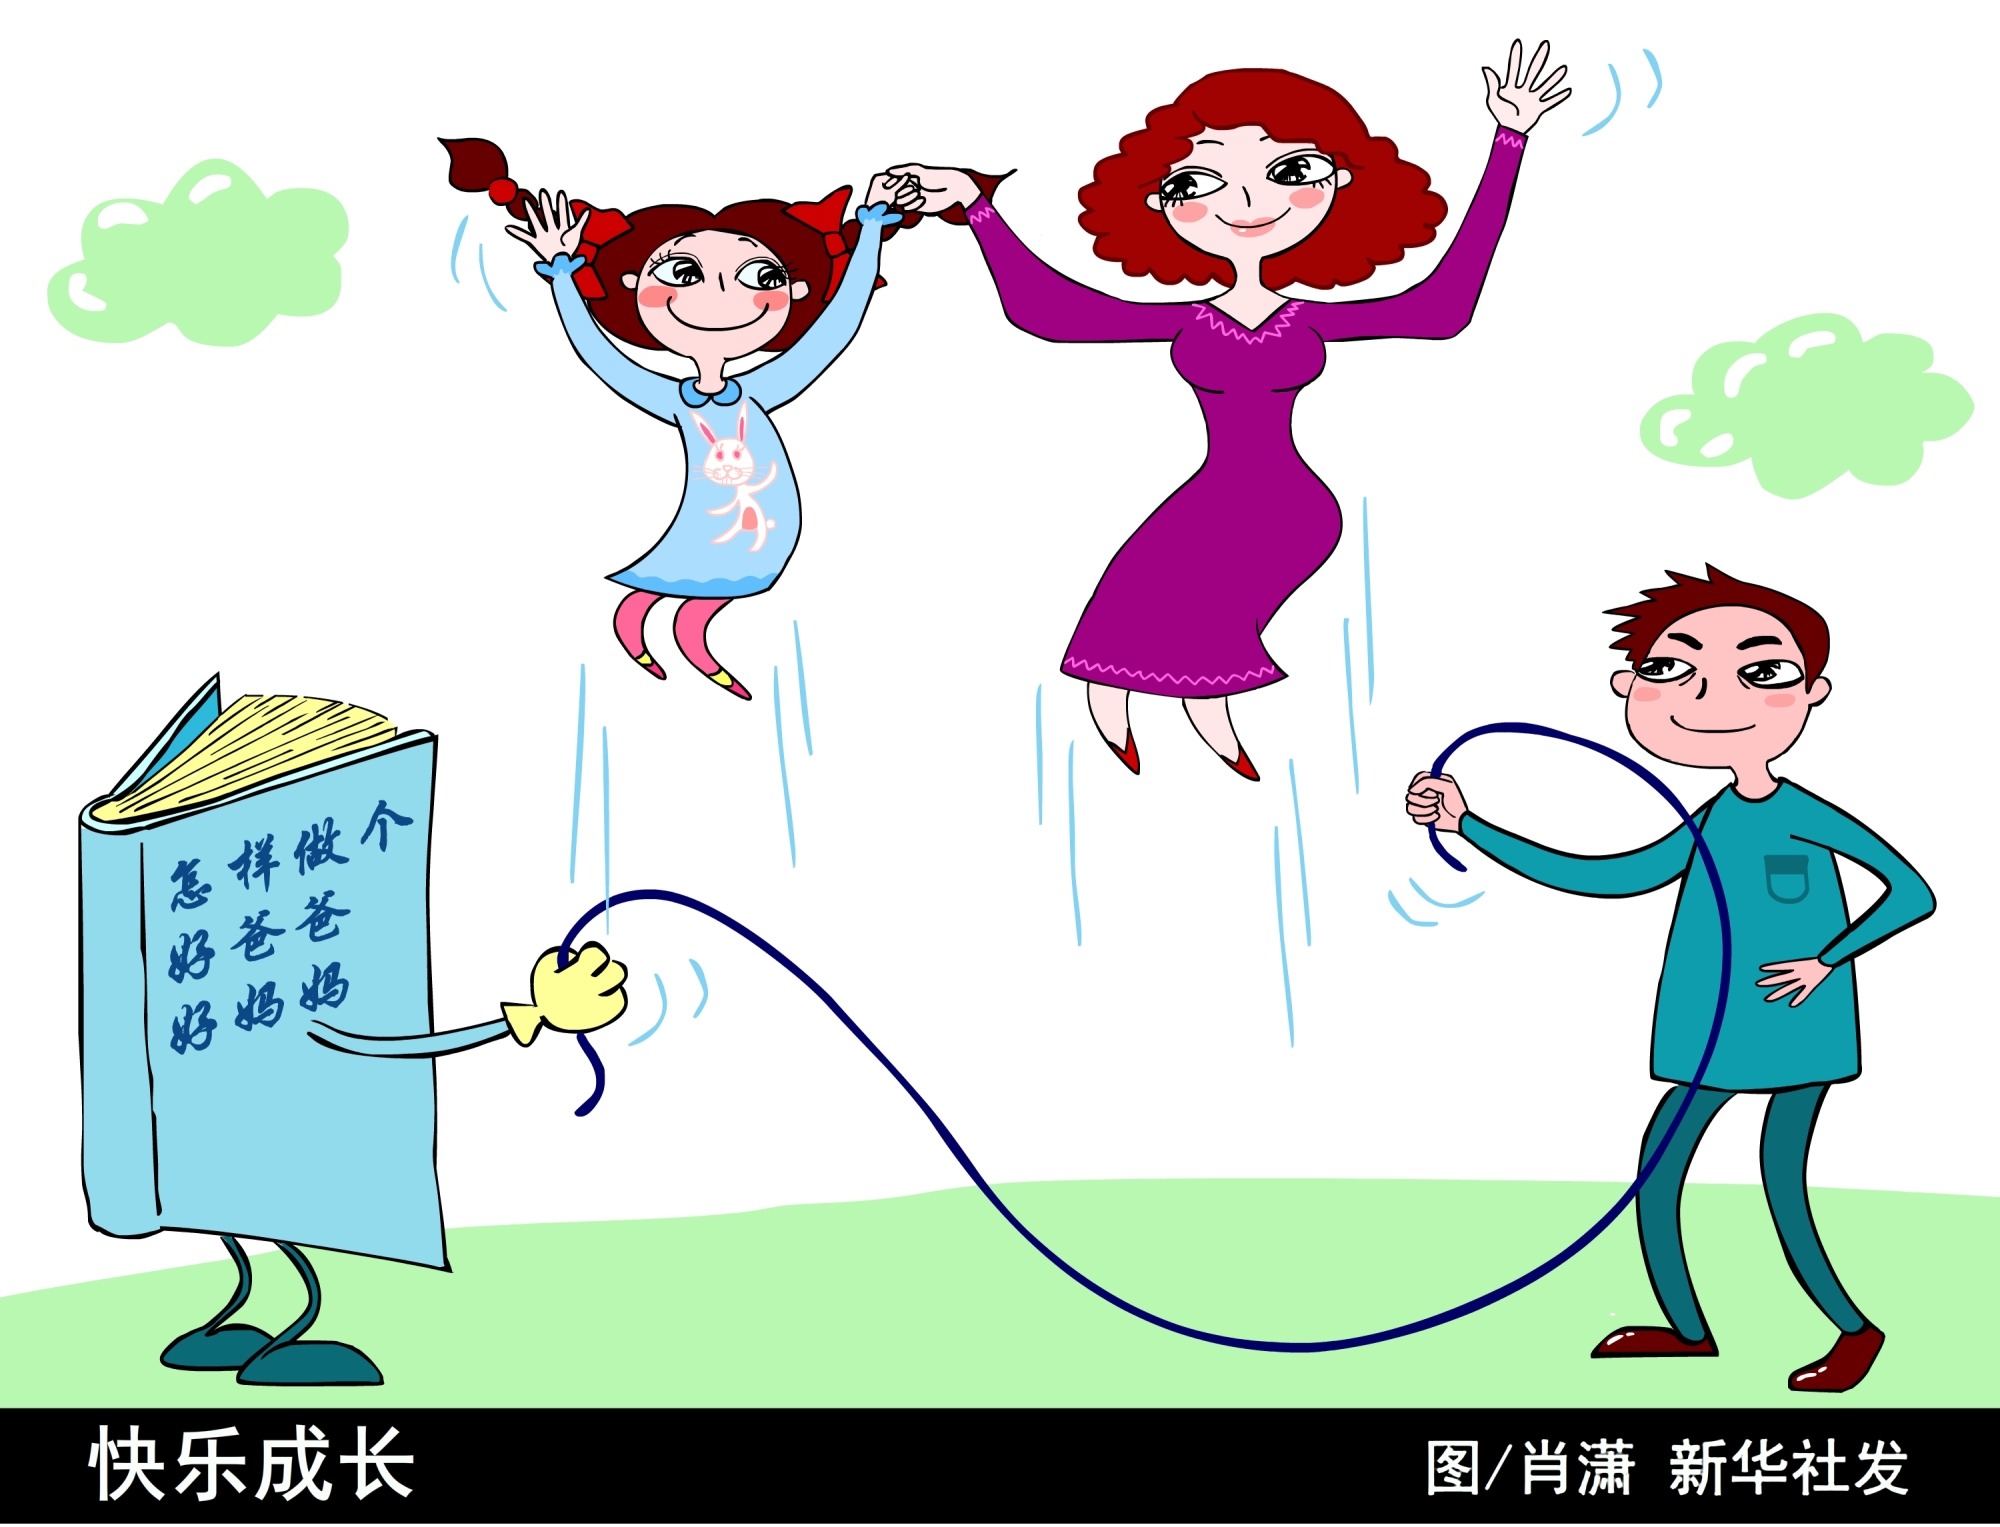 用孩子的双手 创造一个新世界 纯水岸幼儿园开学了_深圳新闻网